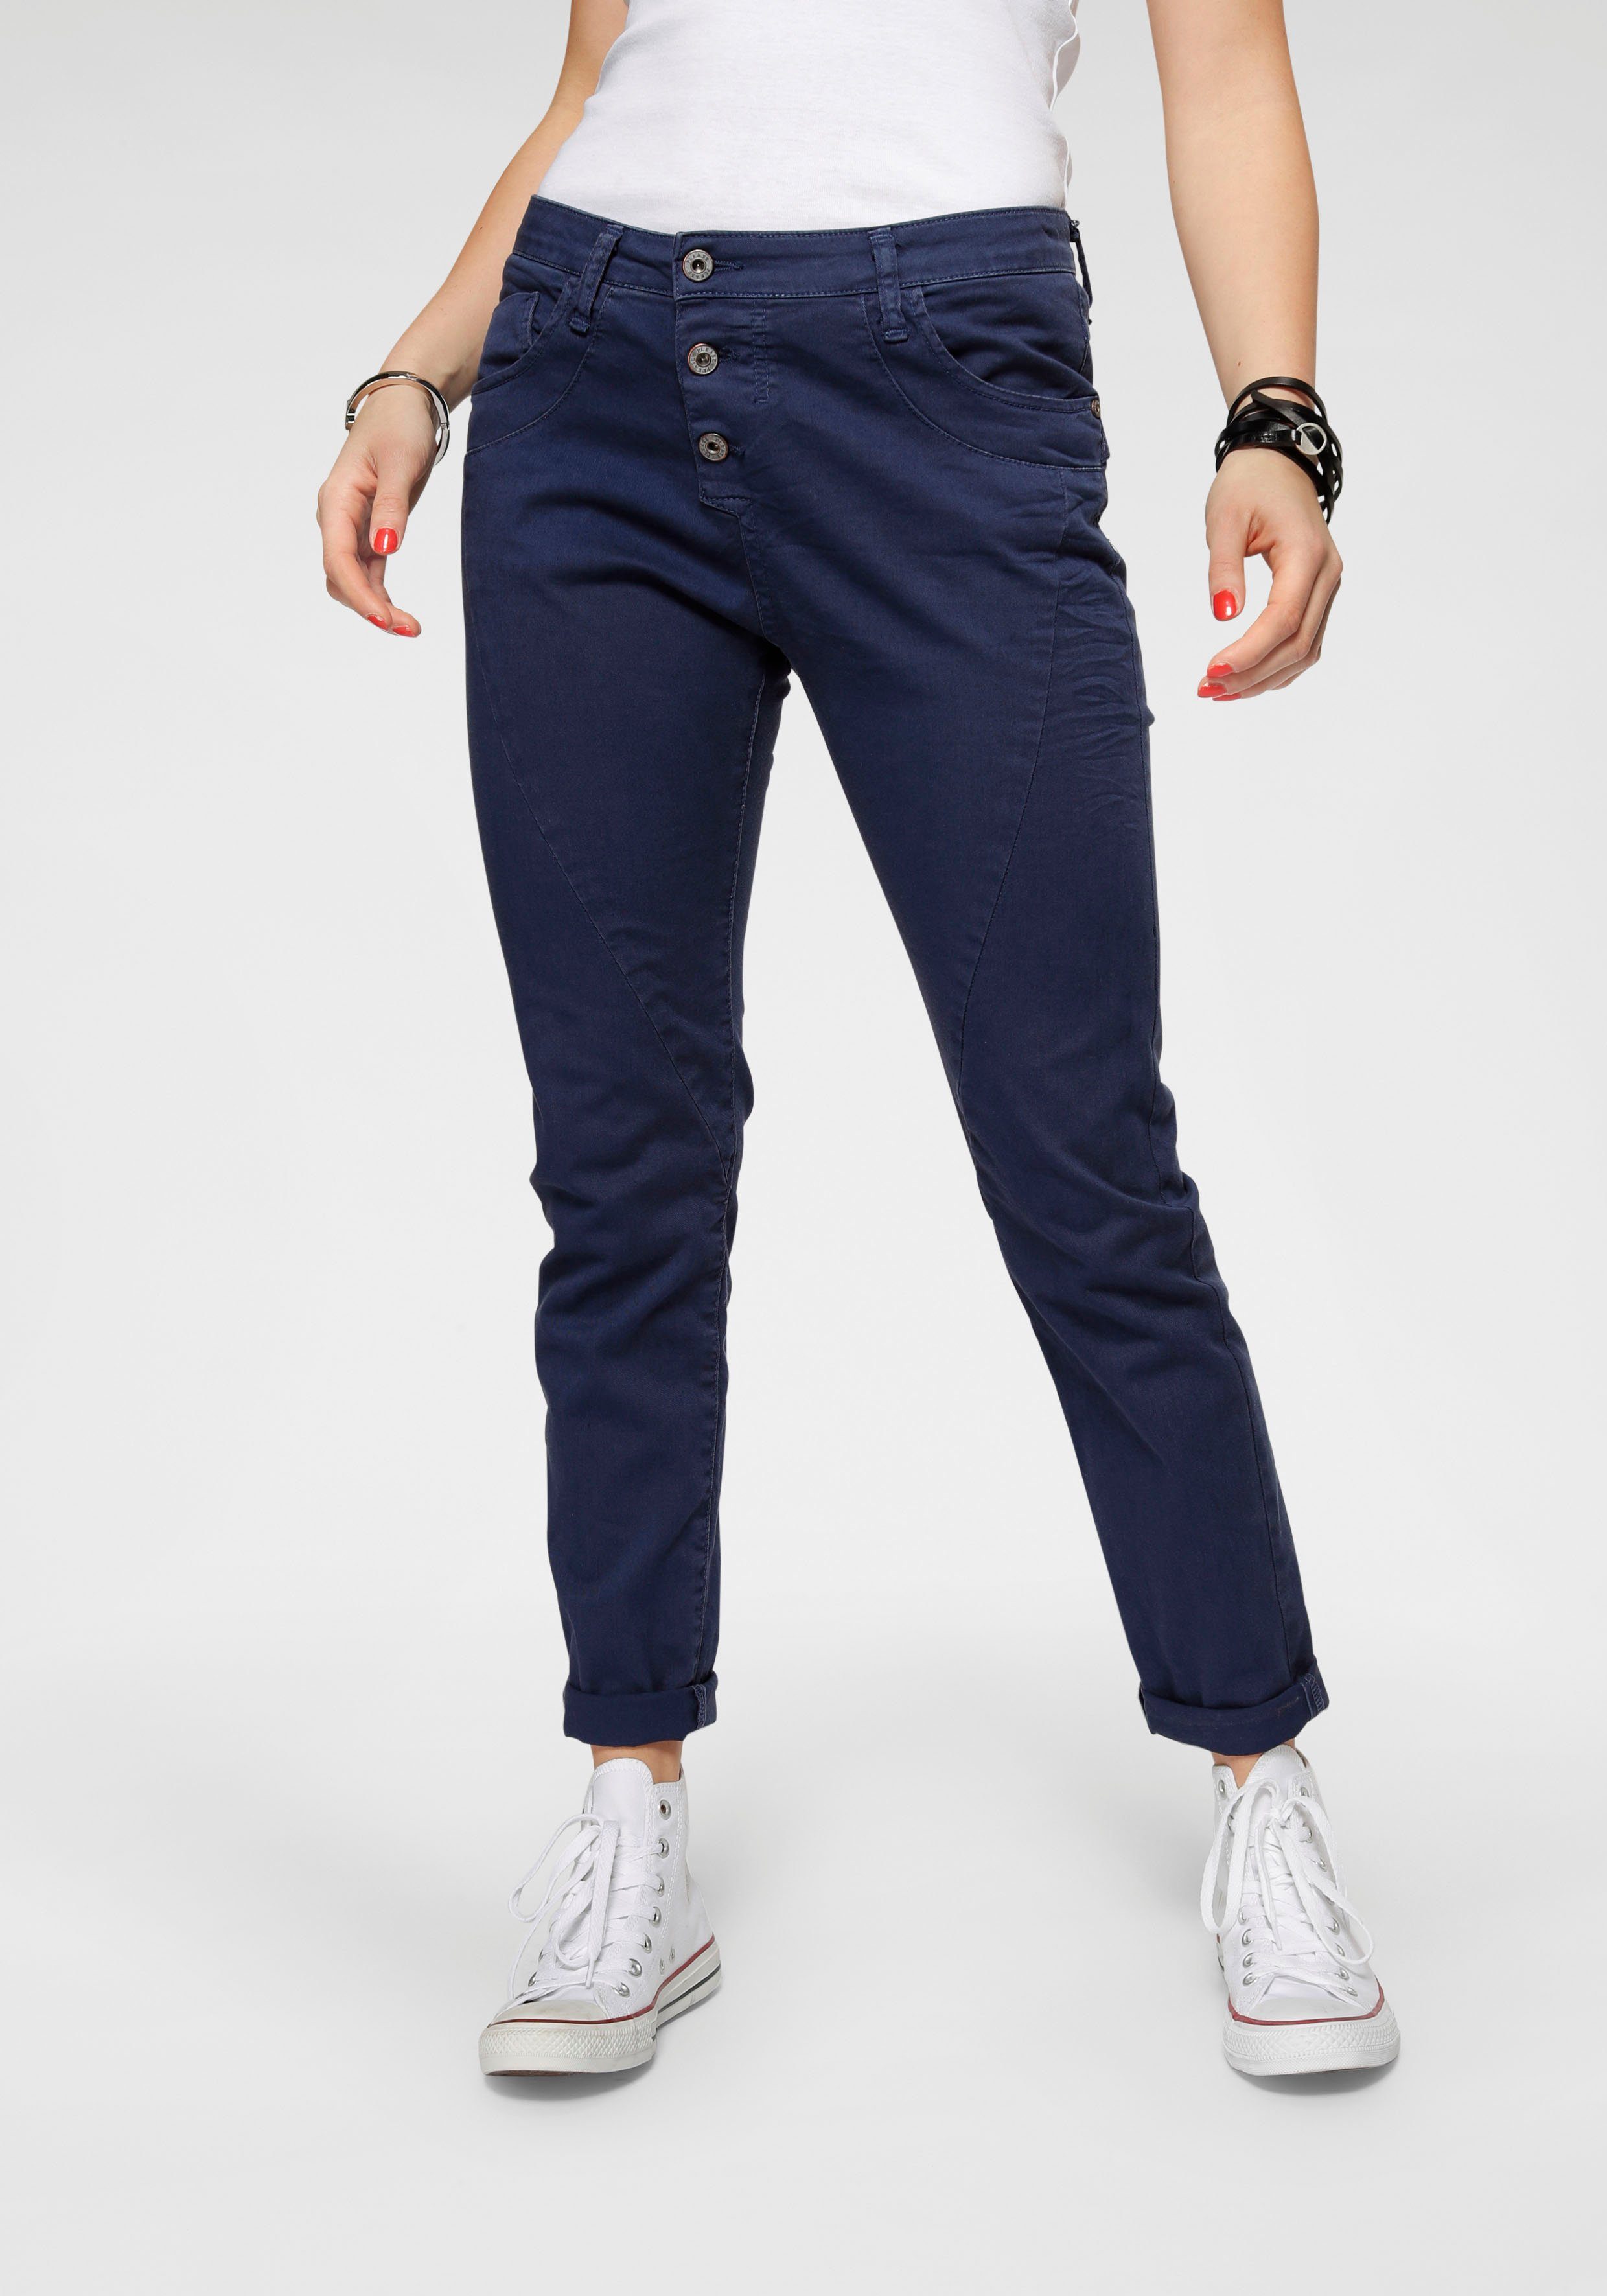 Boyfriend-Jeans in großen Größen online kaufen | OTTO